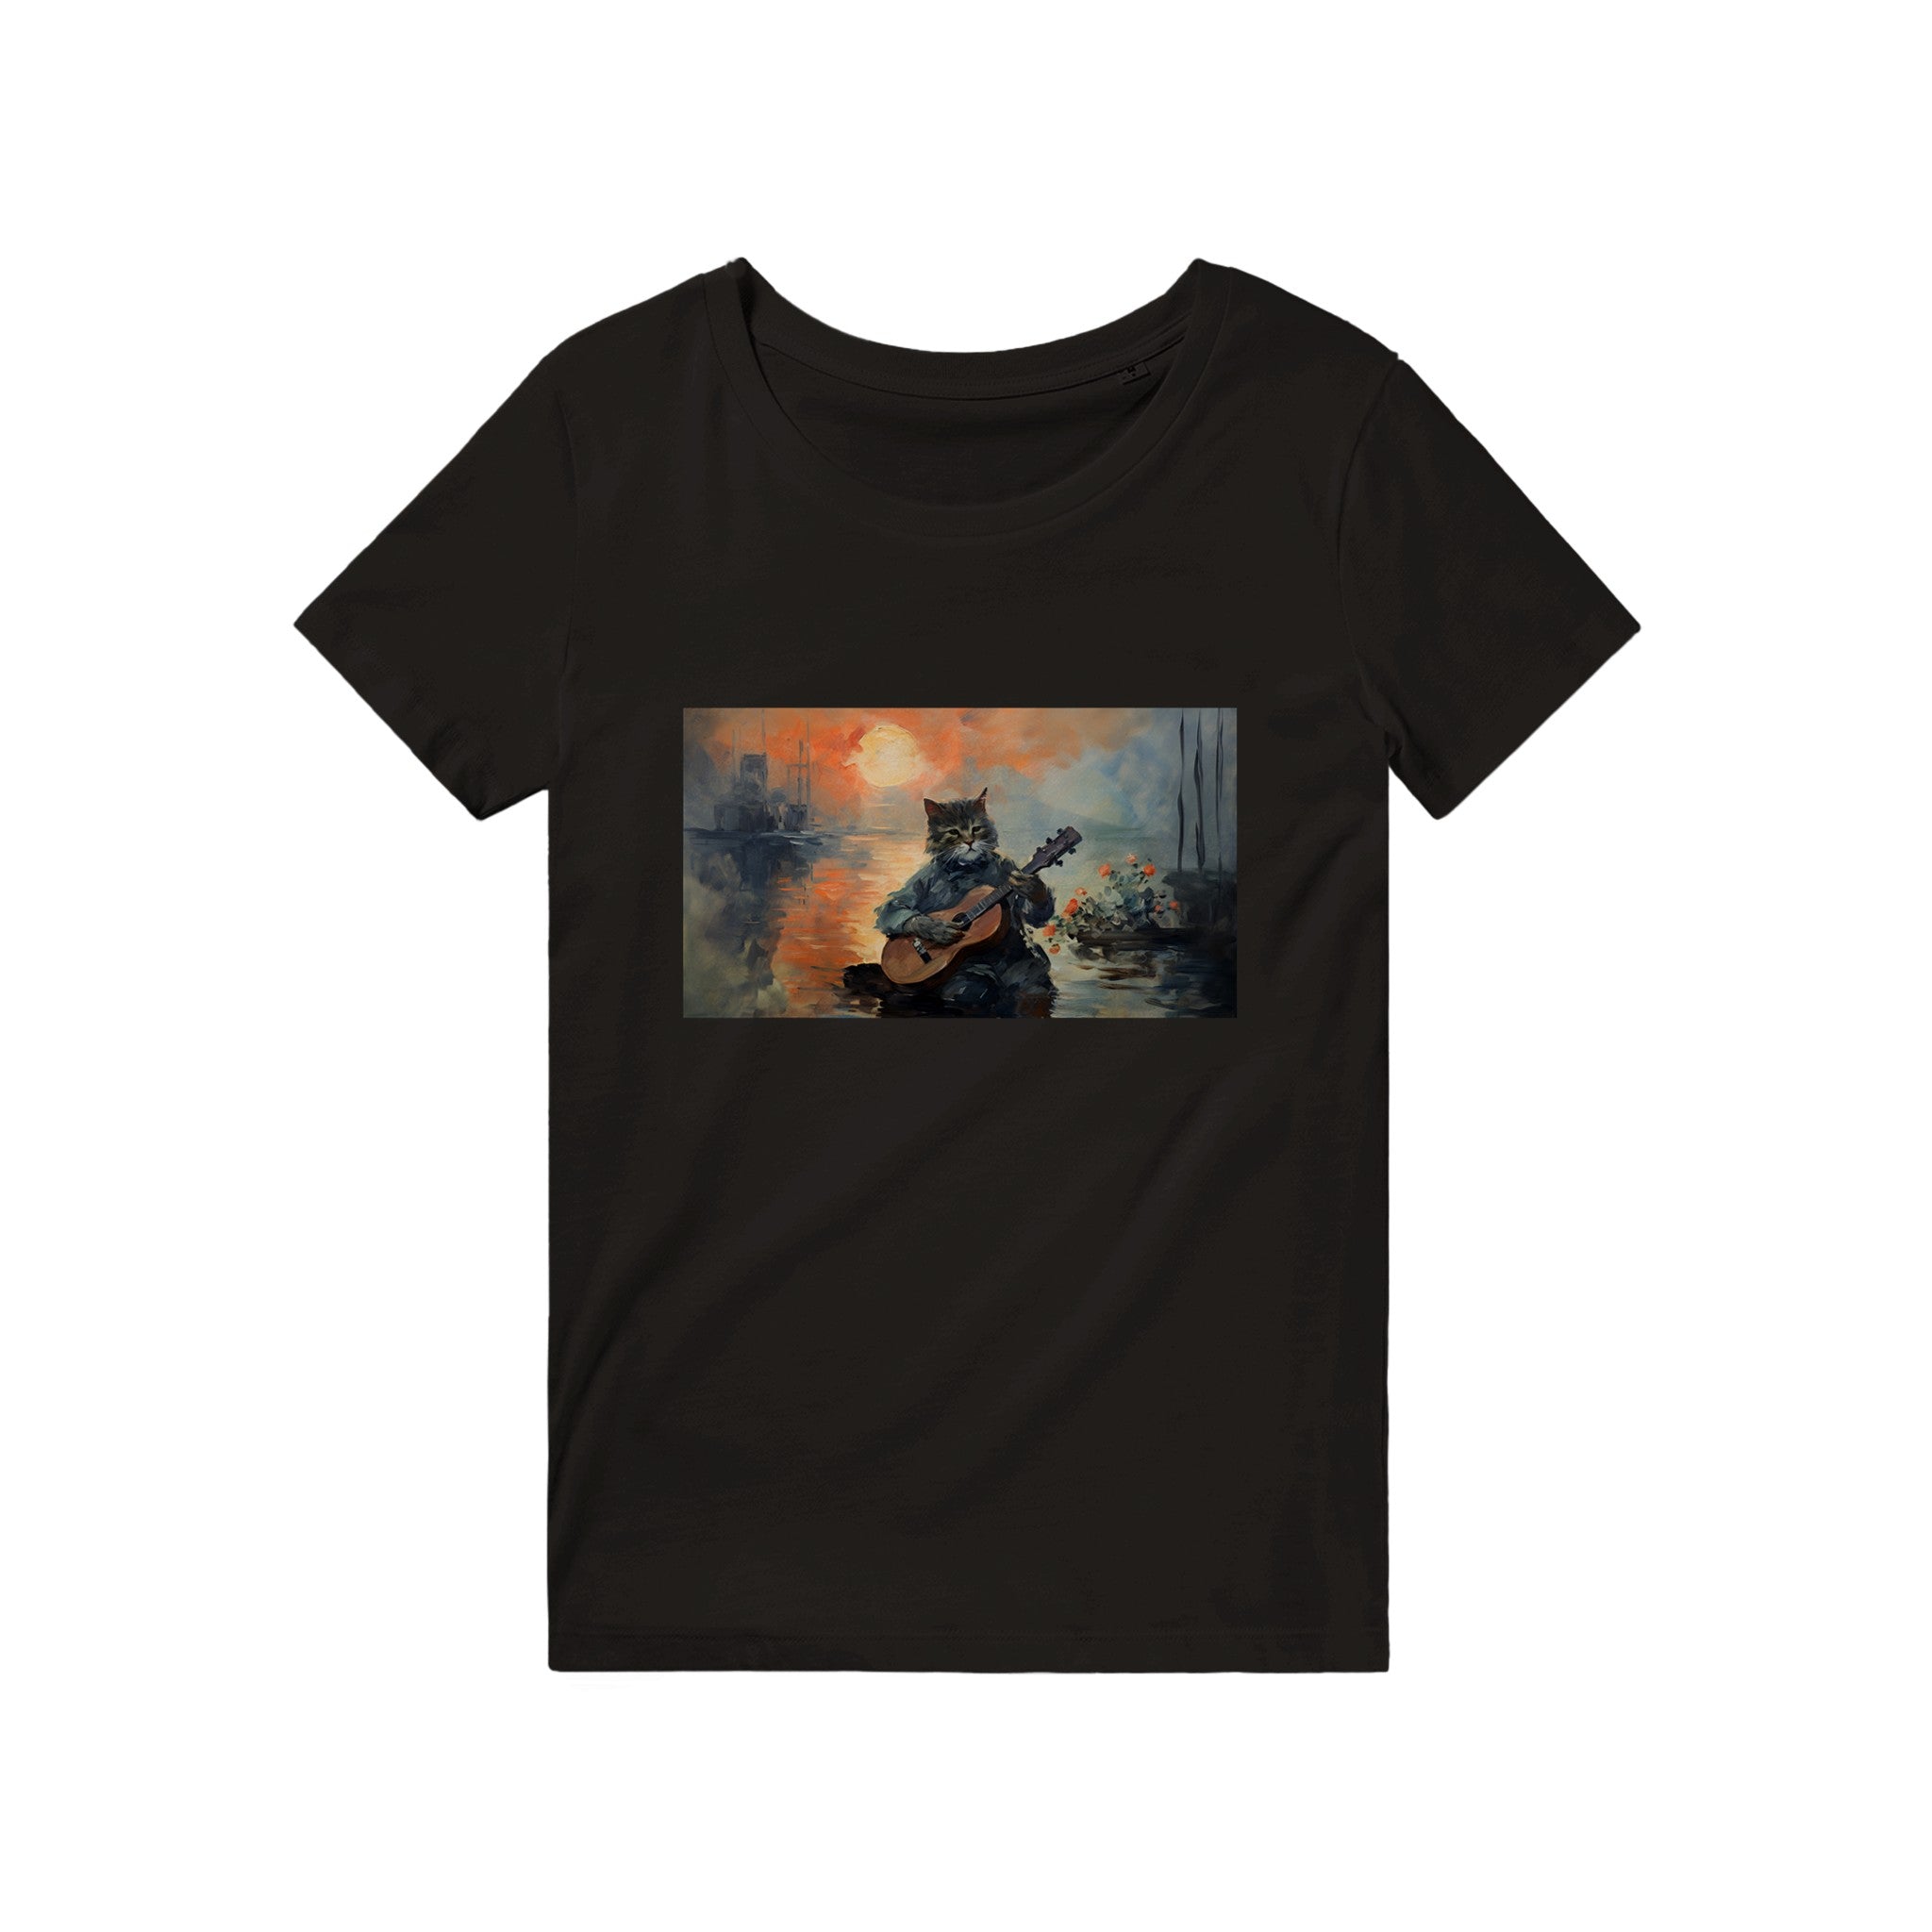 Claude Monets - "Impression, Sonnenaufgang" mit Gitarre spielender Katze - unisex T-shirt